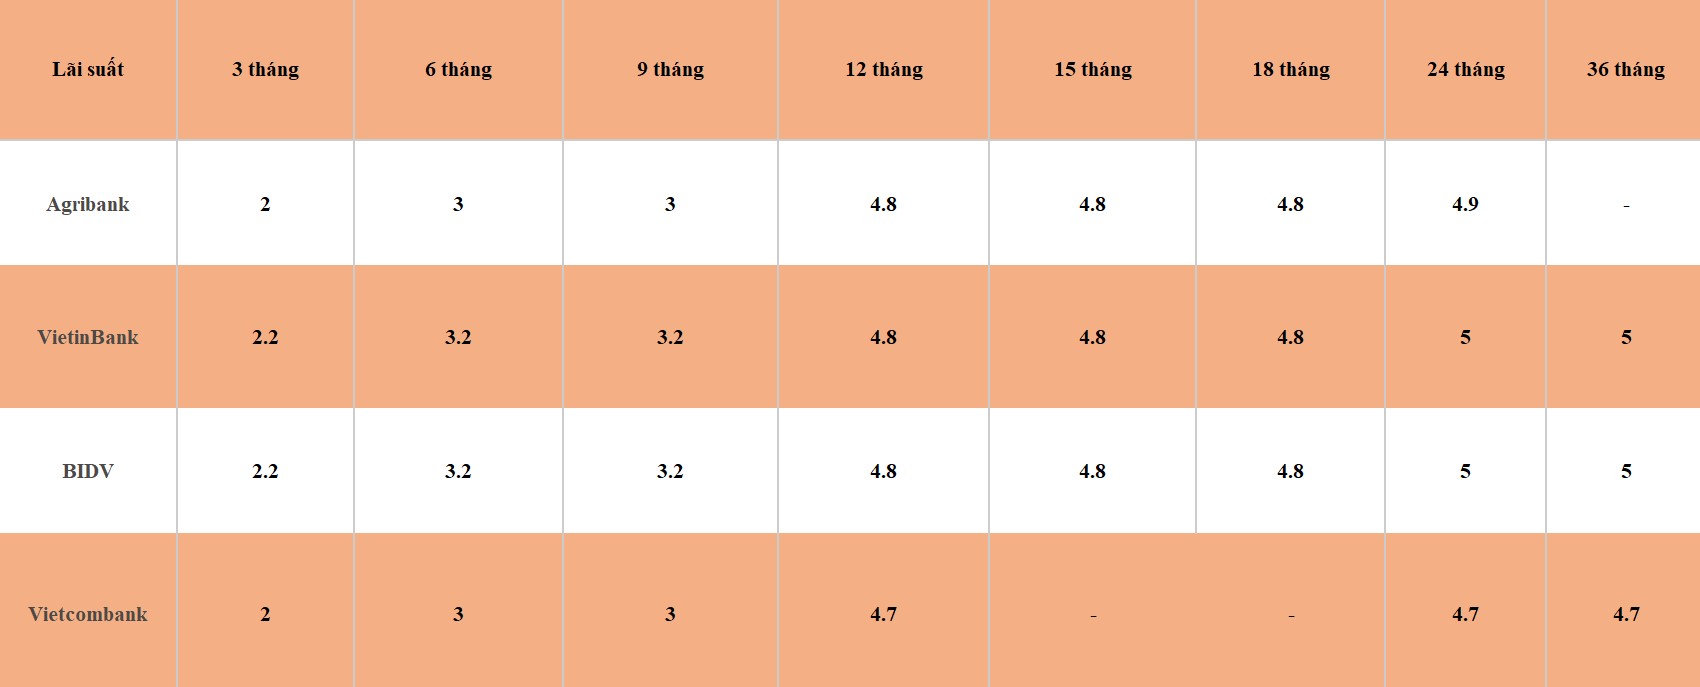 Bảng so sánh lãi suất các kỳ hạn tại Vietcombank, Agribank, VietinBank và BIDV. Số liệu ghi nhận ngày 12.3.2024. Đơn vị tính: %/năm. Bảng: Khương Duy  